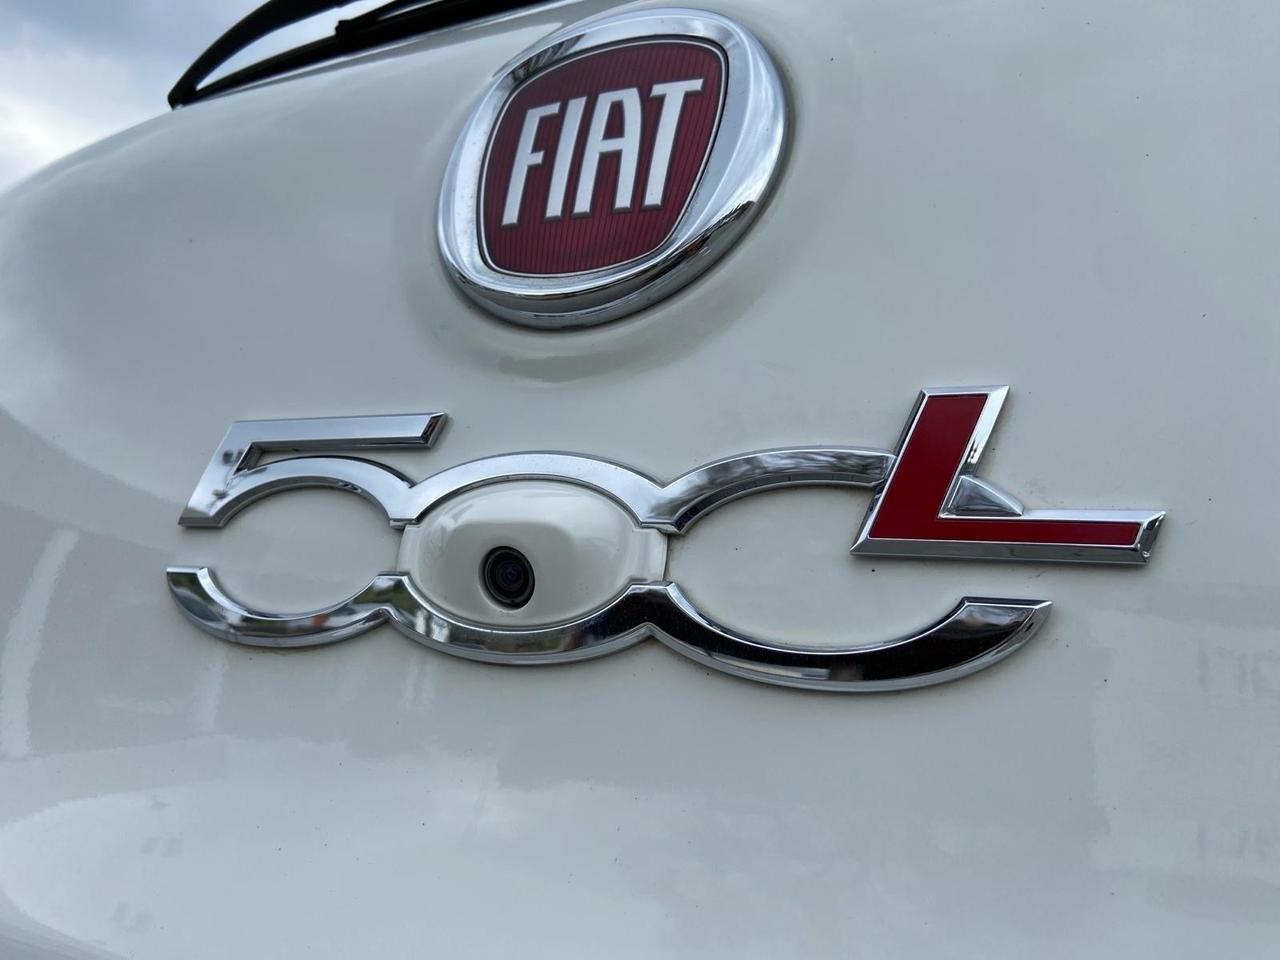 Fiat 500L 1.6 Multijet 120 CV Pop Star 2019 N1